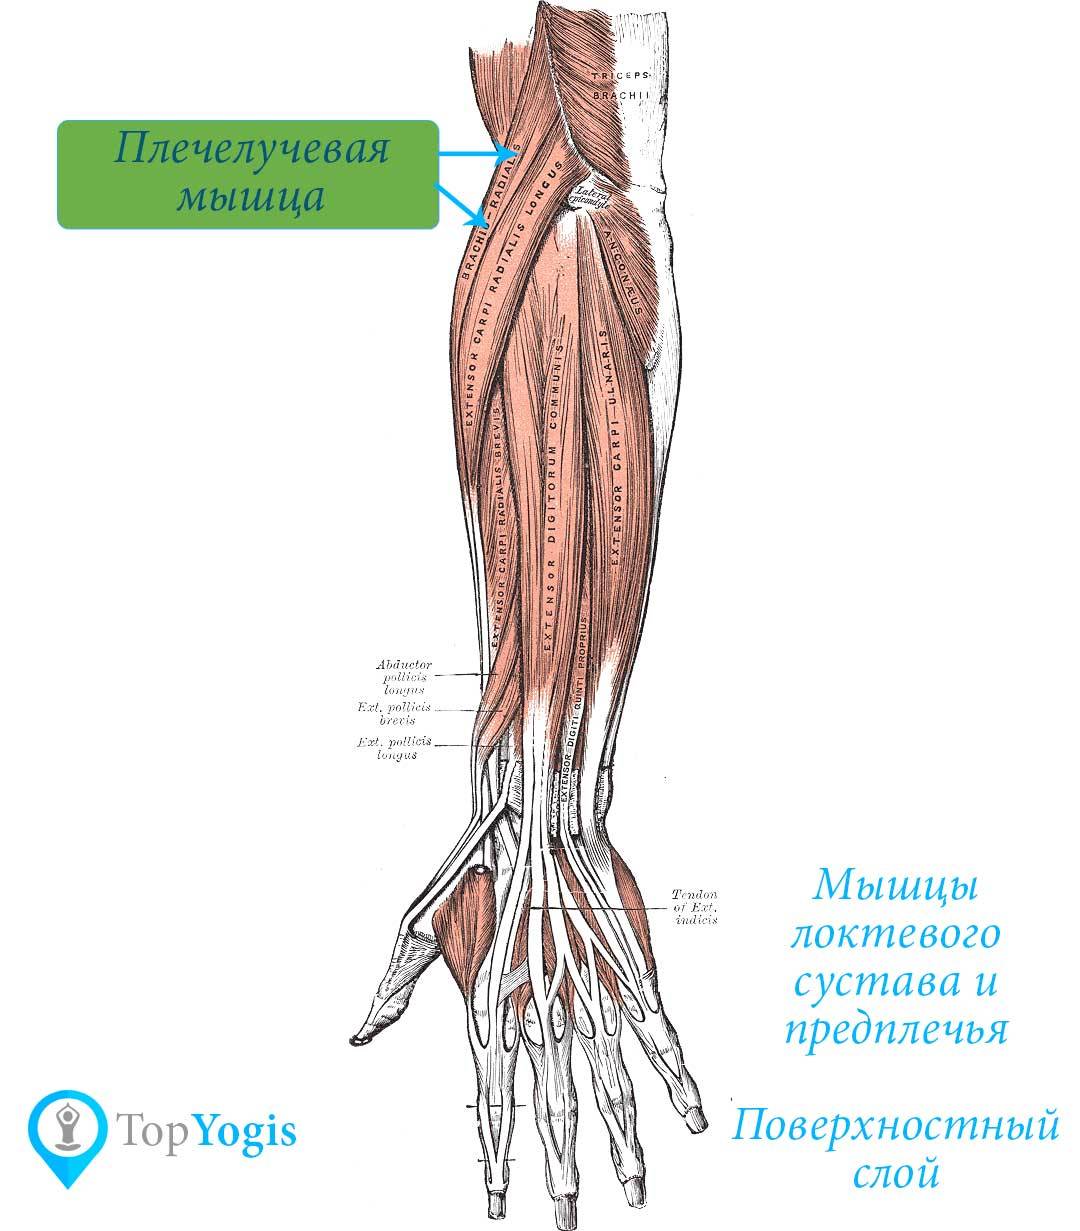 Платизма - мышца шеи, комплекс упражнений для укрепления, функции и анатомия